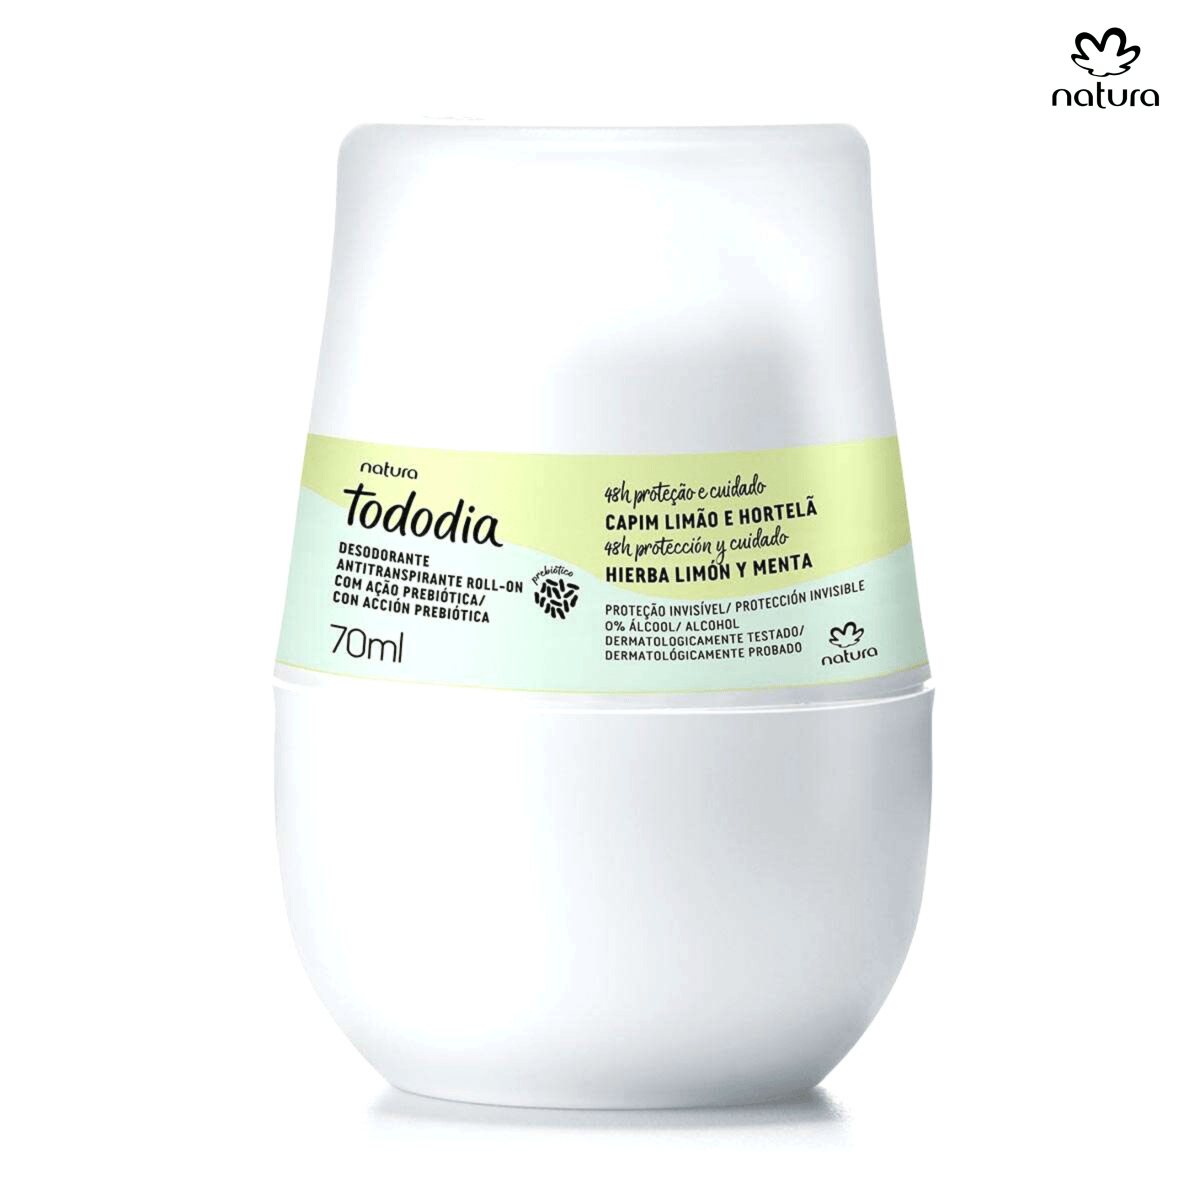 Tododia Desodorante Antitranspirante Roll-on Hierba Limon y Menta - Beaute Florale